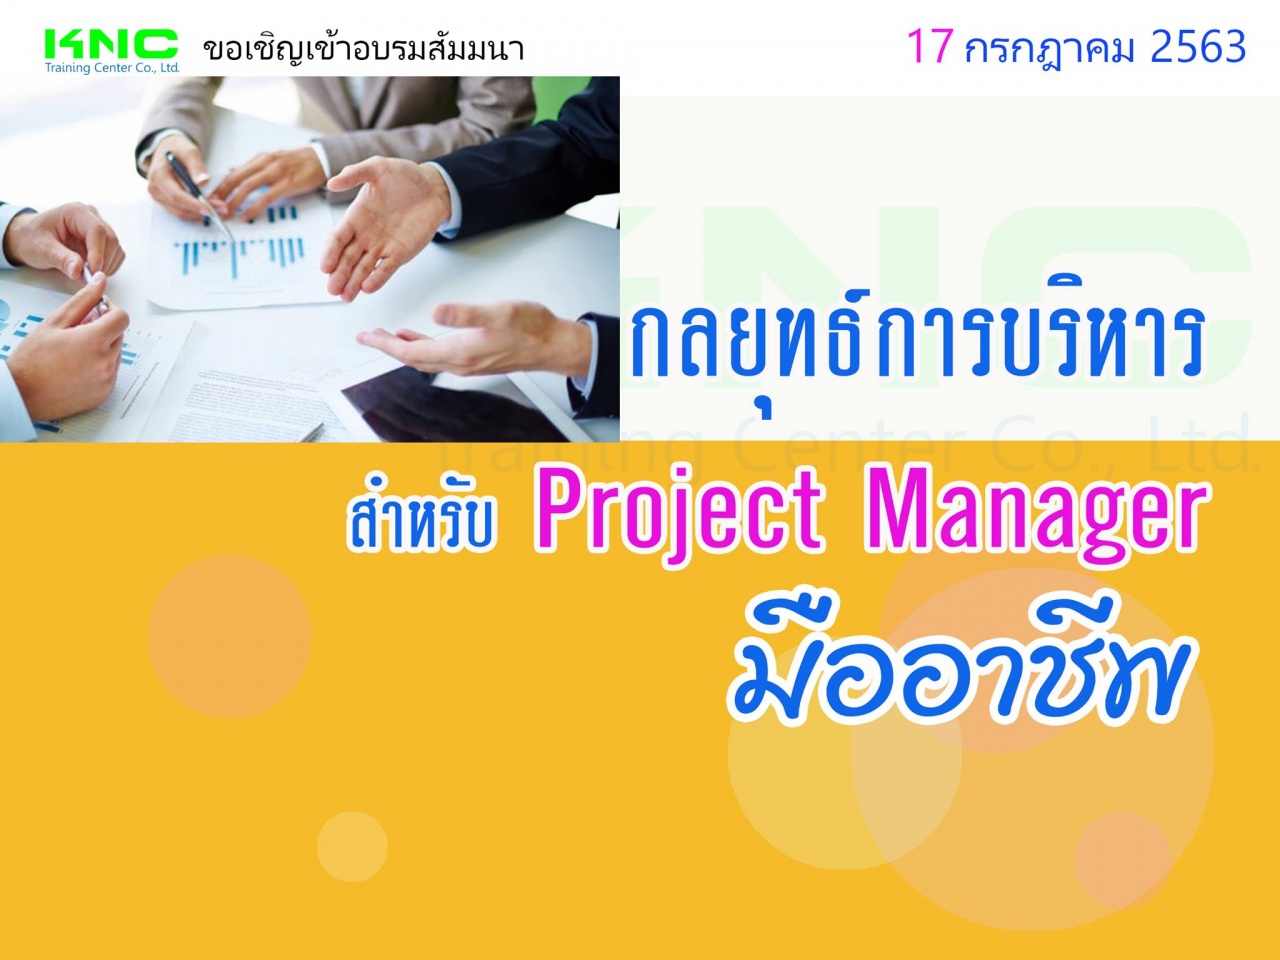 กลยุทธ์การบริหารสำหรับ Project Manager มืออาชีพ